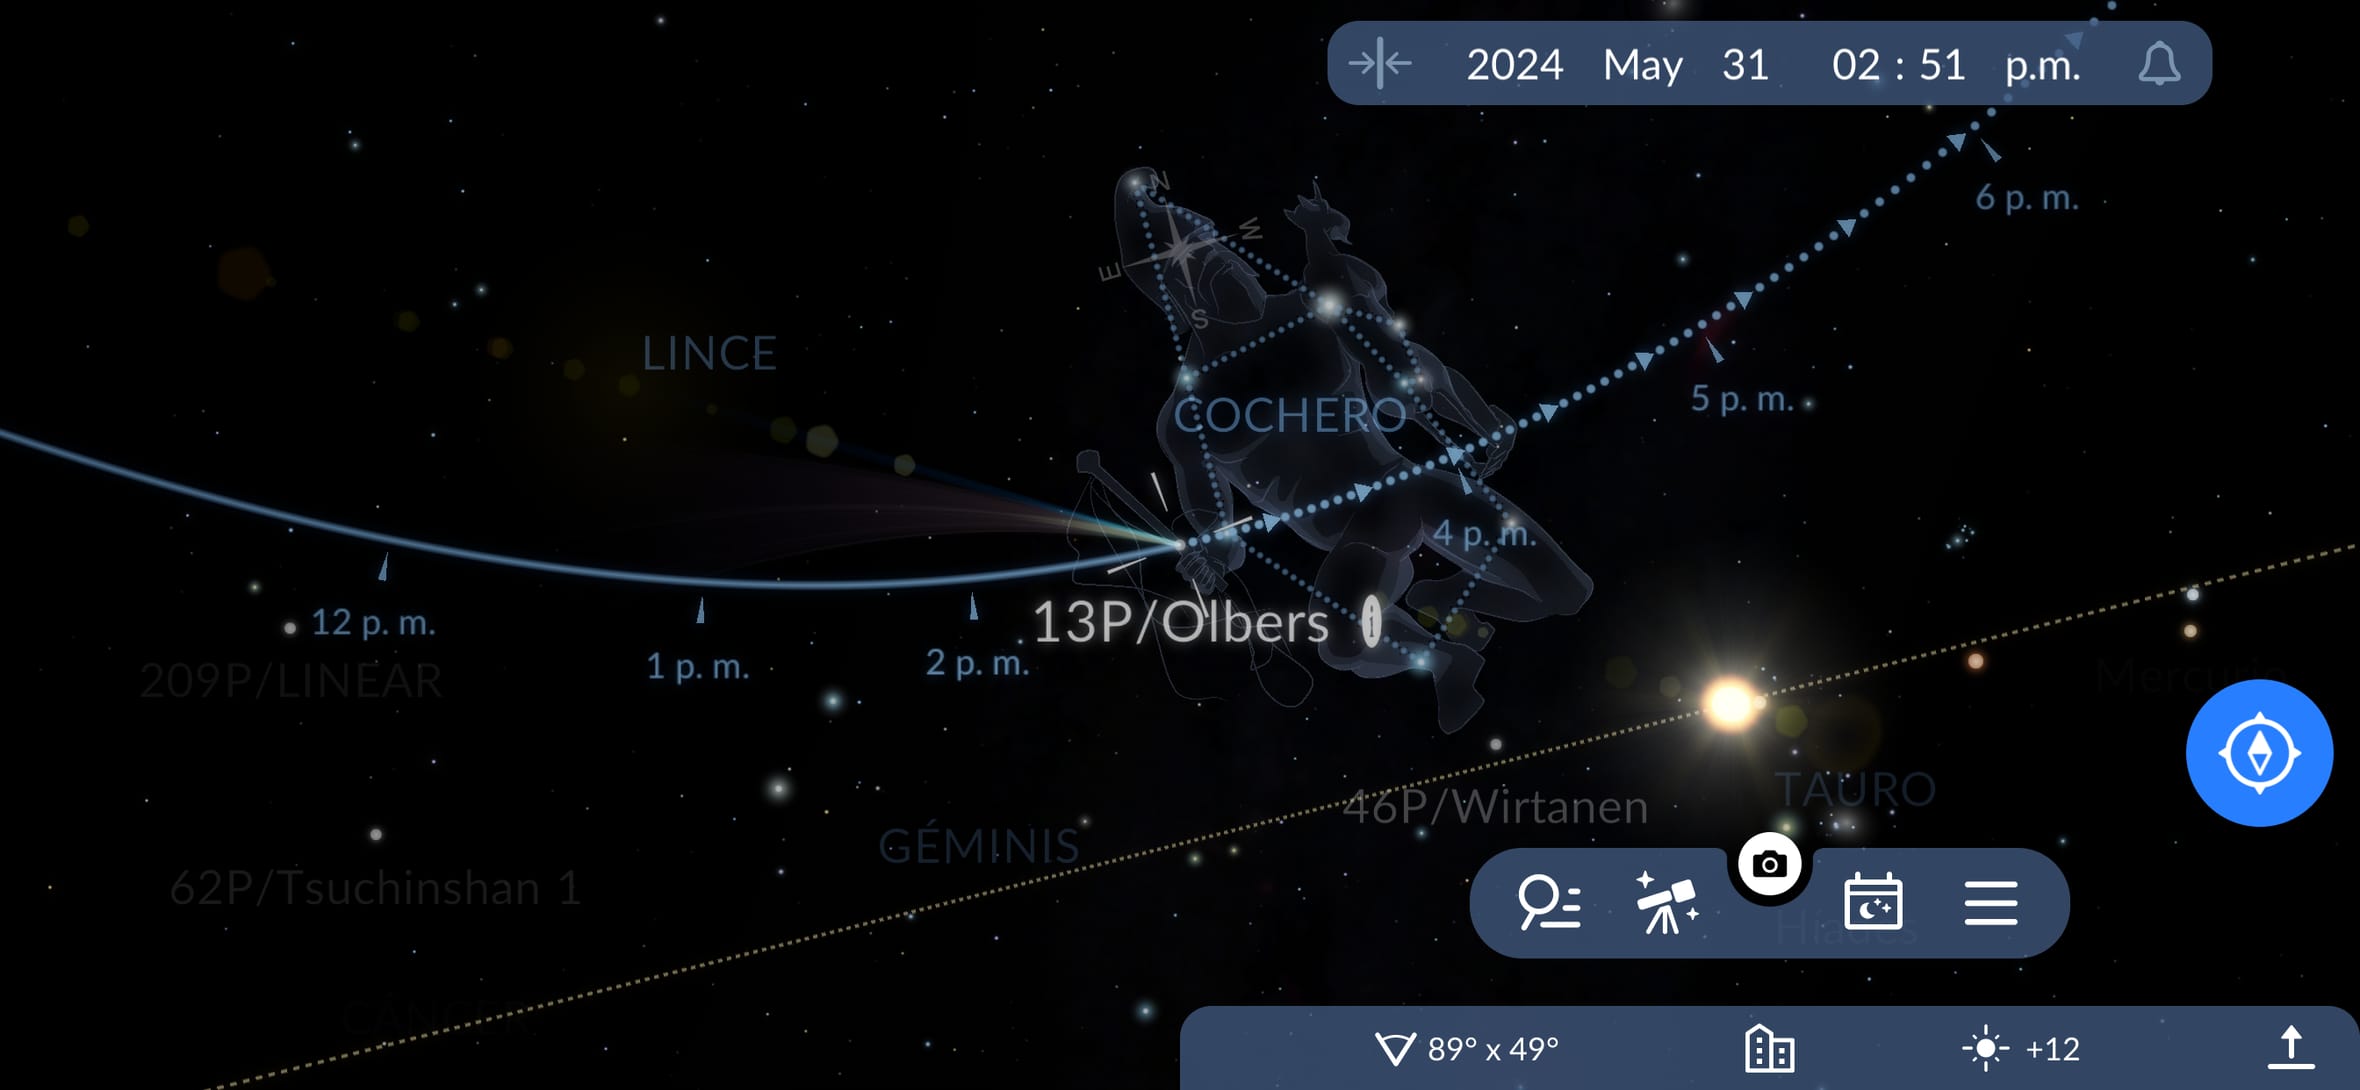 Cómo encontrar el cometa Olbers en el cielo